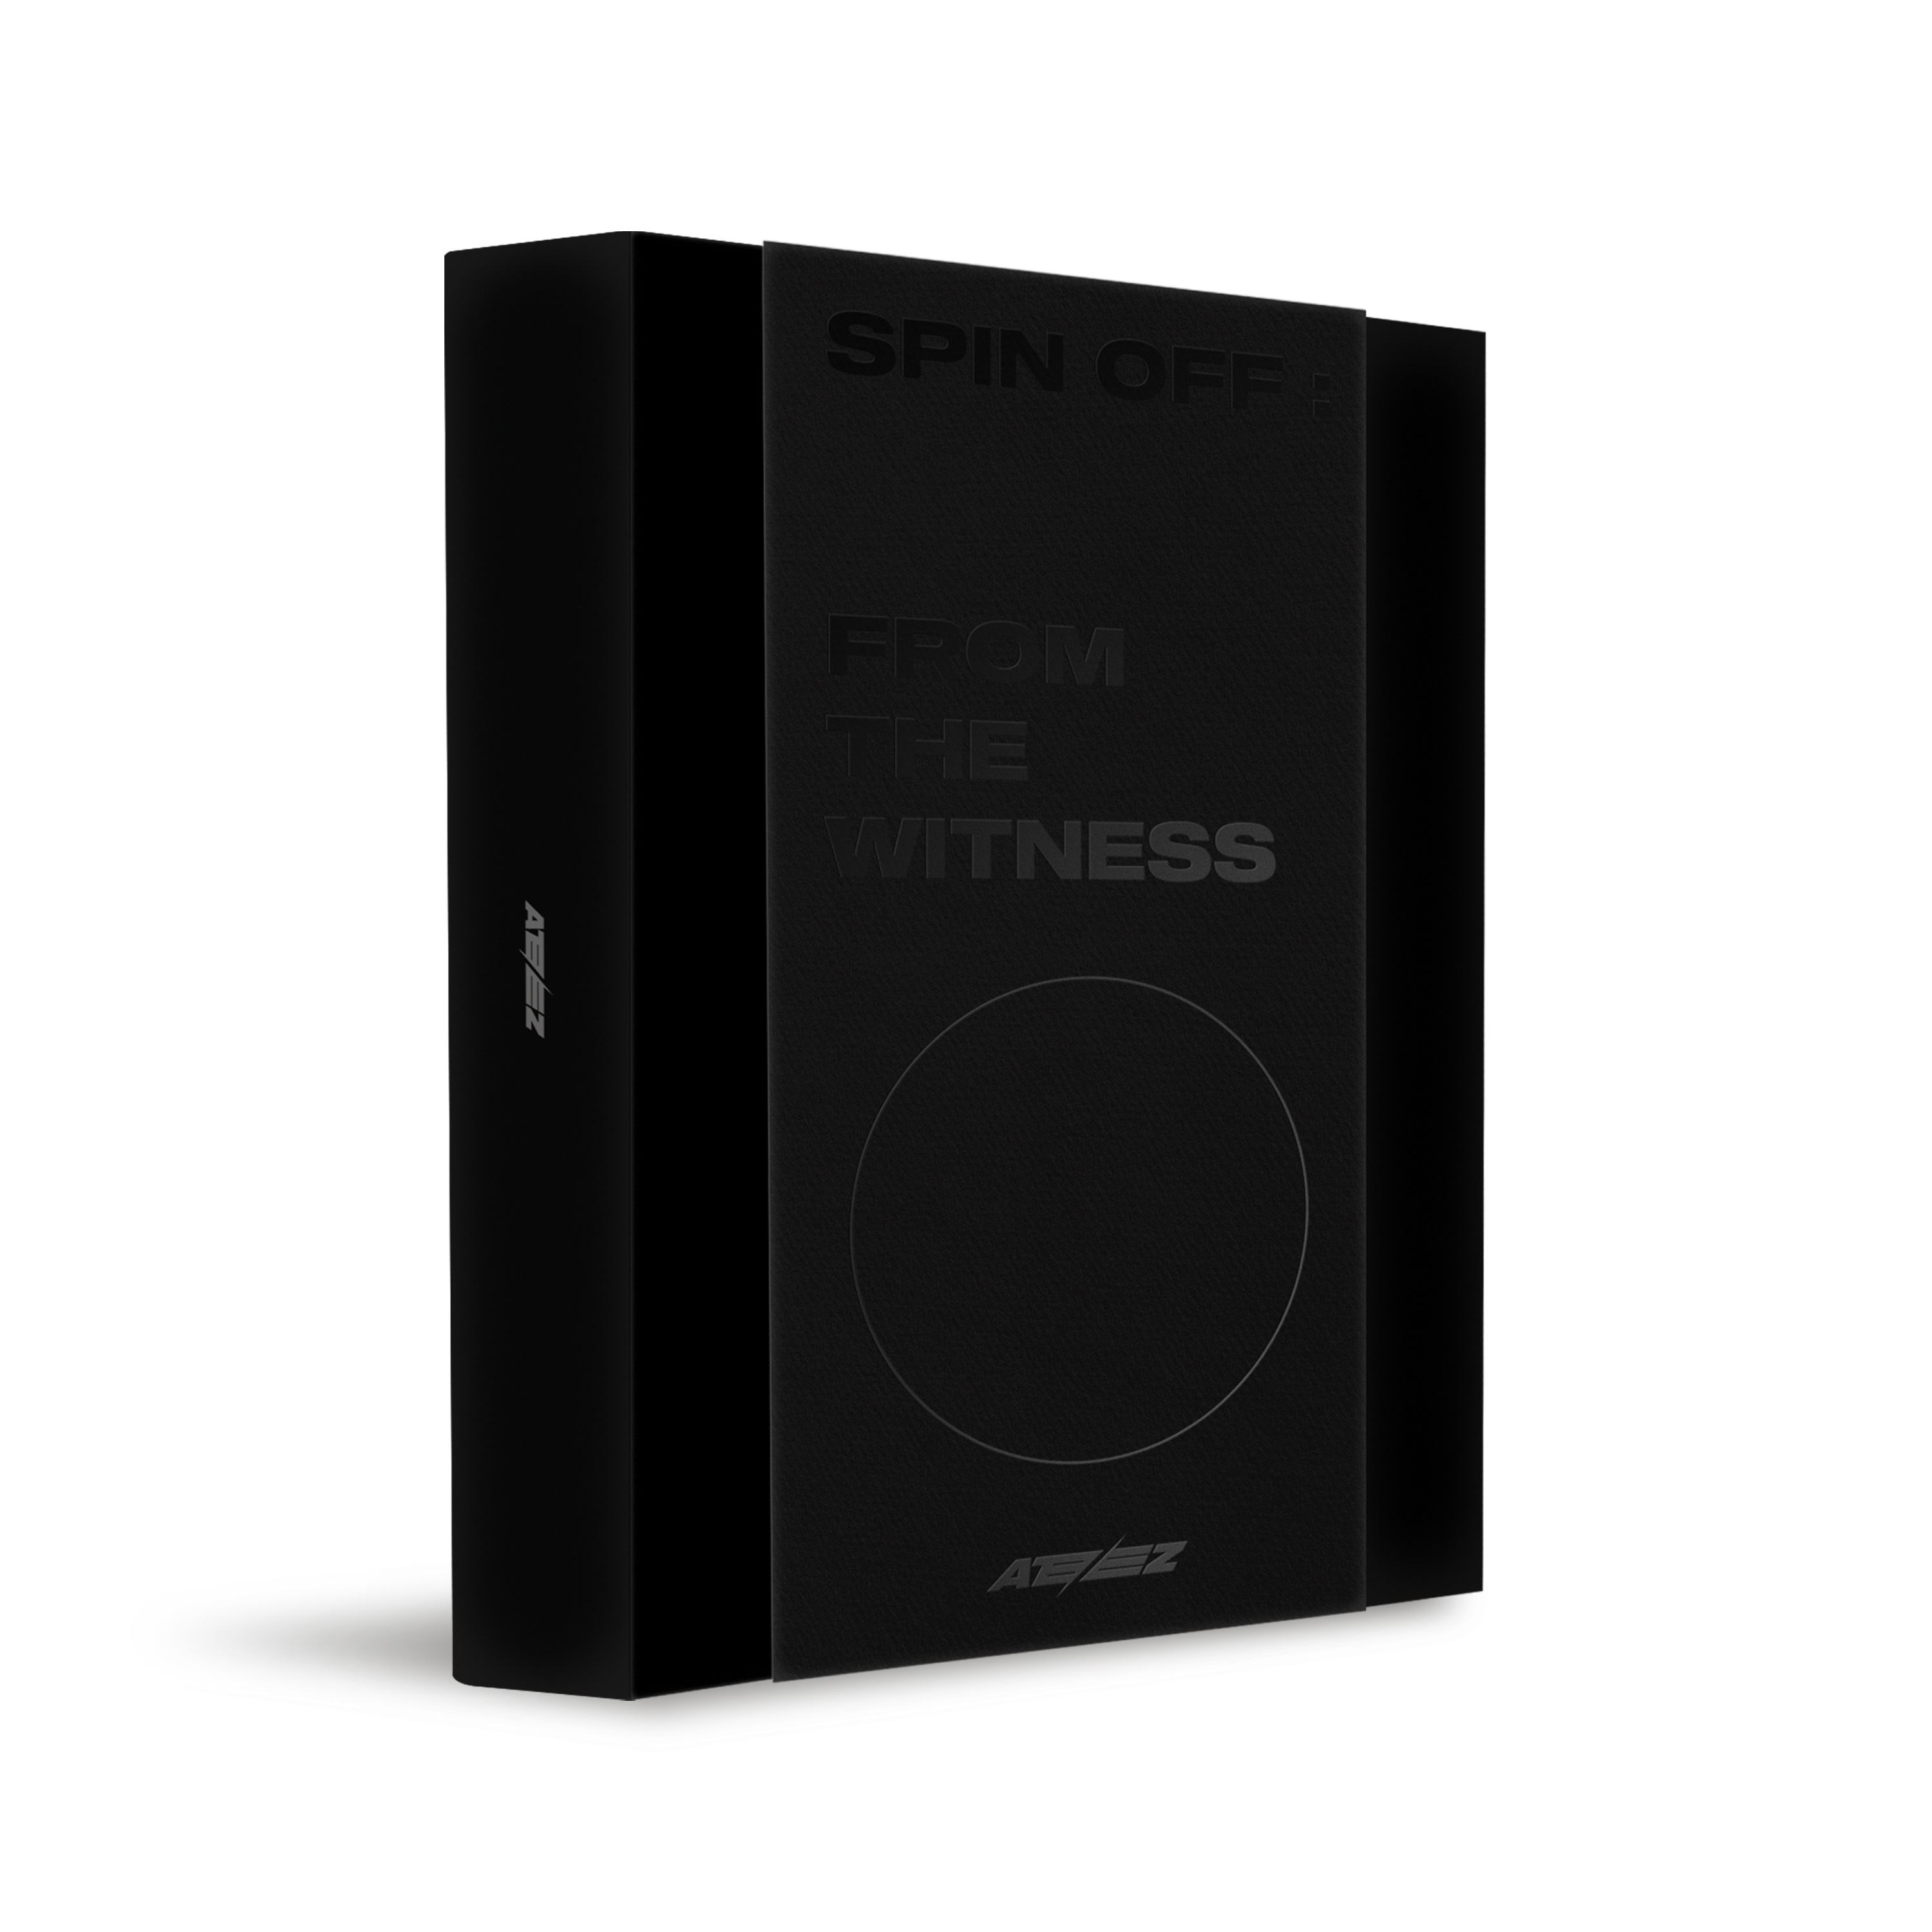 에이티즈 (ATEEZ) - 싱글앨범 1집 [SPIN OFF : FROM THE WITNESS] (WITNESS VER.) (한정반)